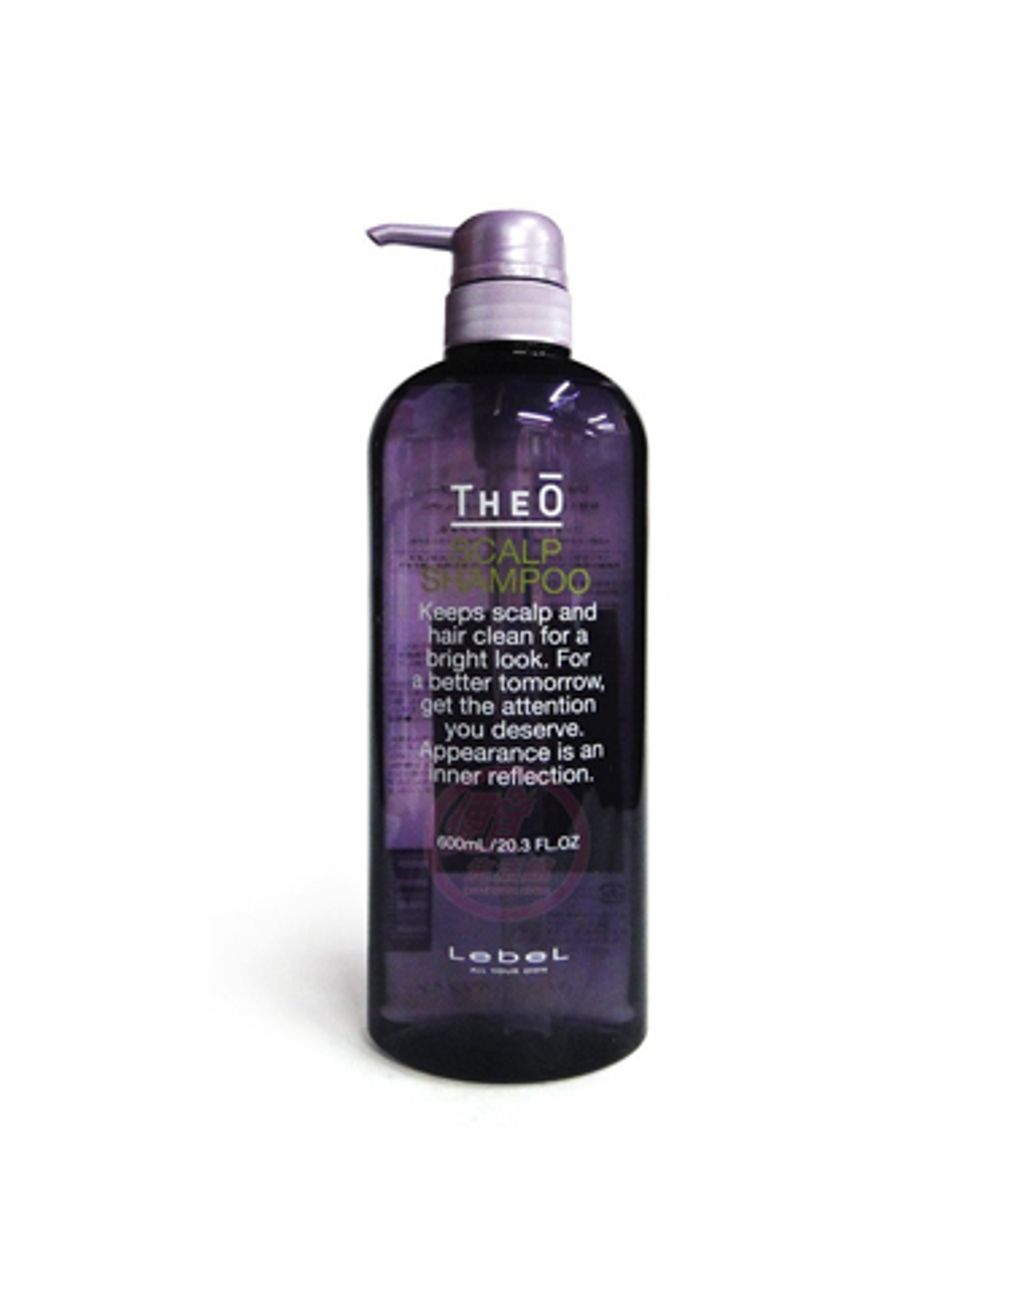 LB-Theo_shampoo_L_theo_shampoo1.jpg